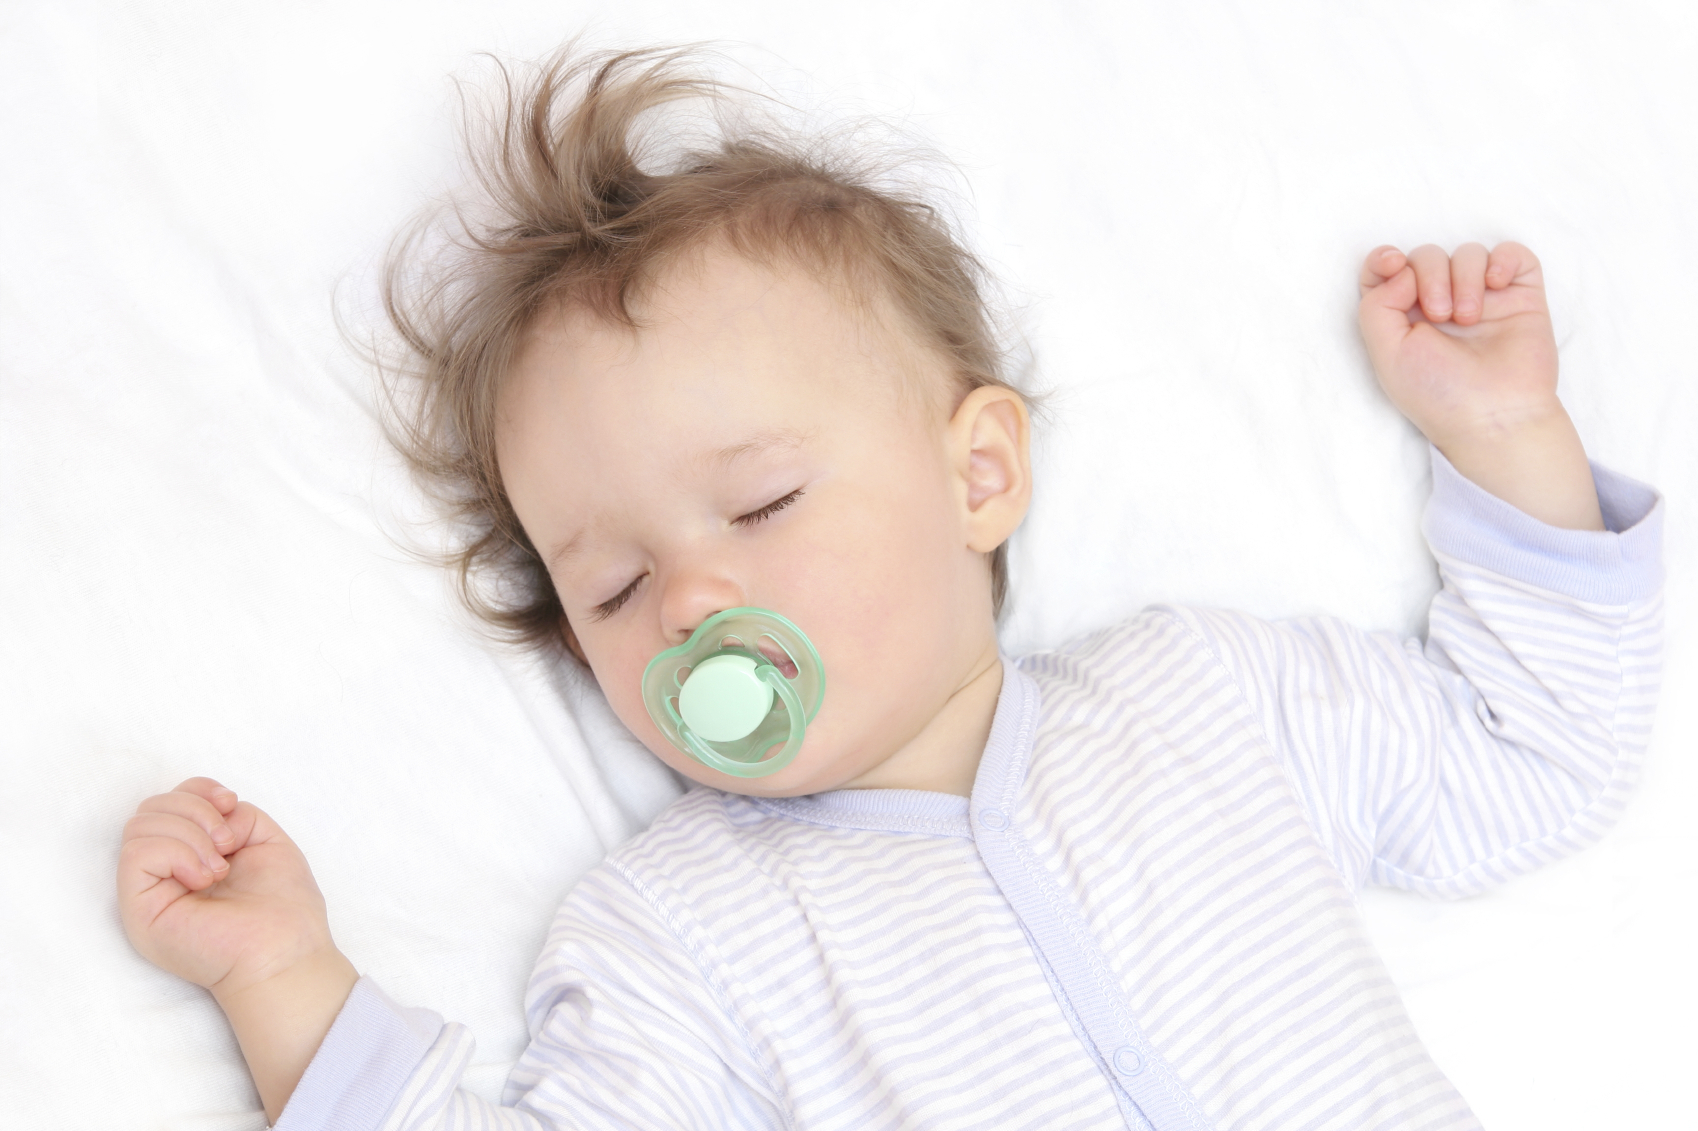 دراسة: توقف التنفس أثناء النوم قد يعيق نمو دماغ الطفل